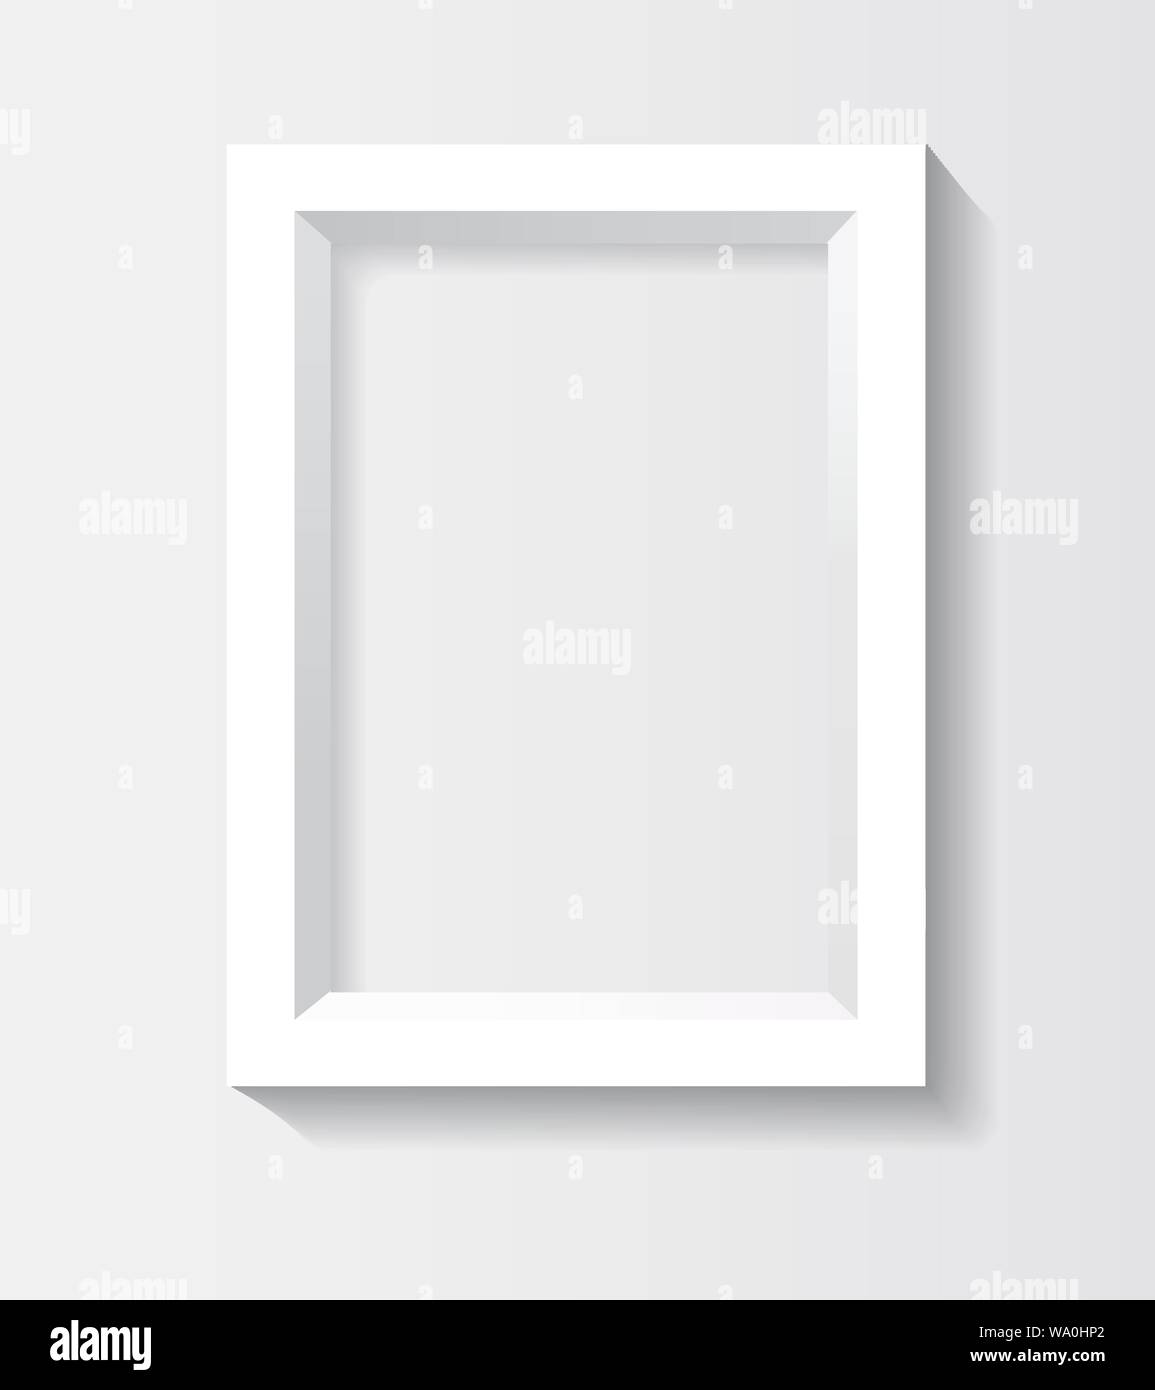 Rectangulaire blanc cadre photo 3d avec ombre Illustration de Vecteur